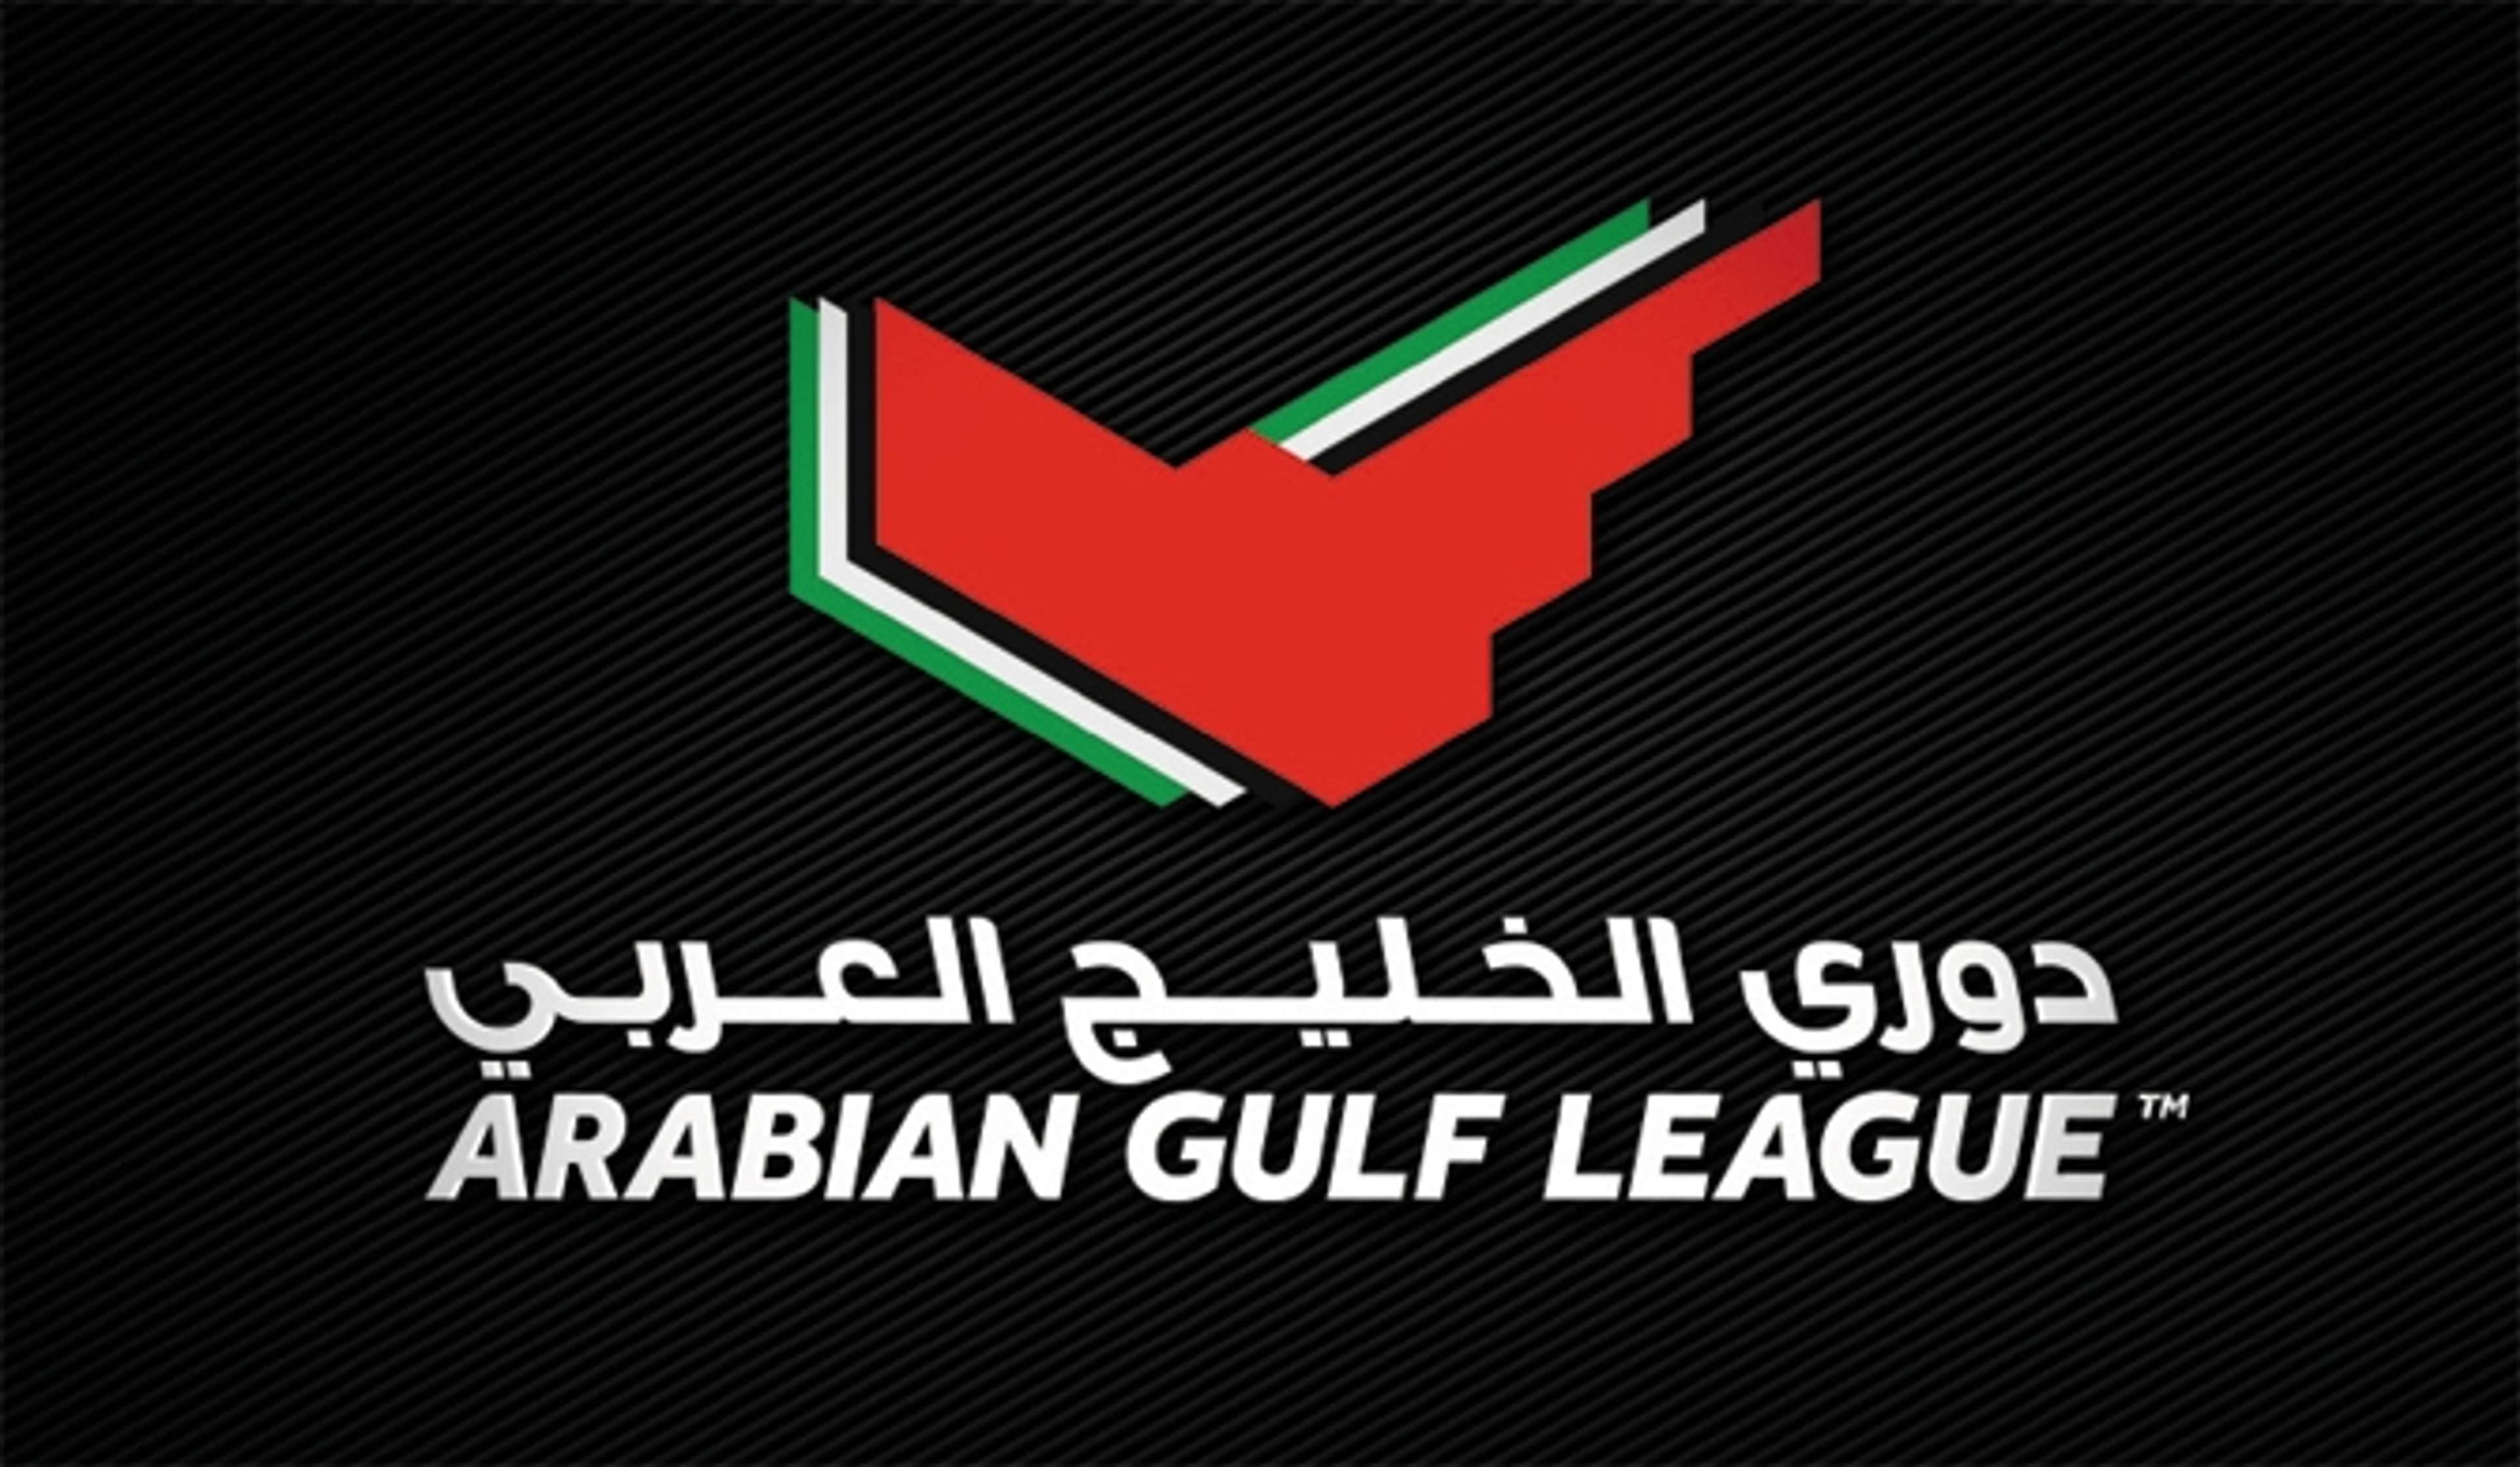 Arabian Gulf League Logo